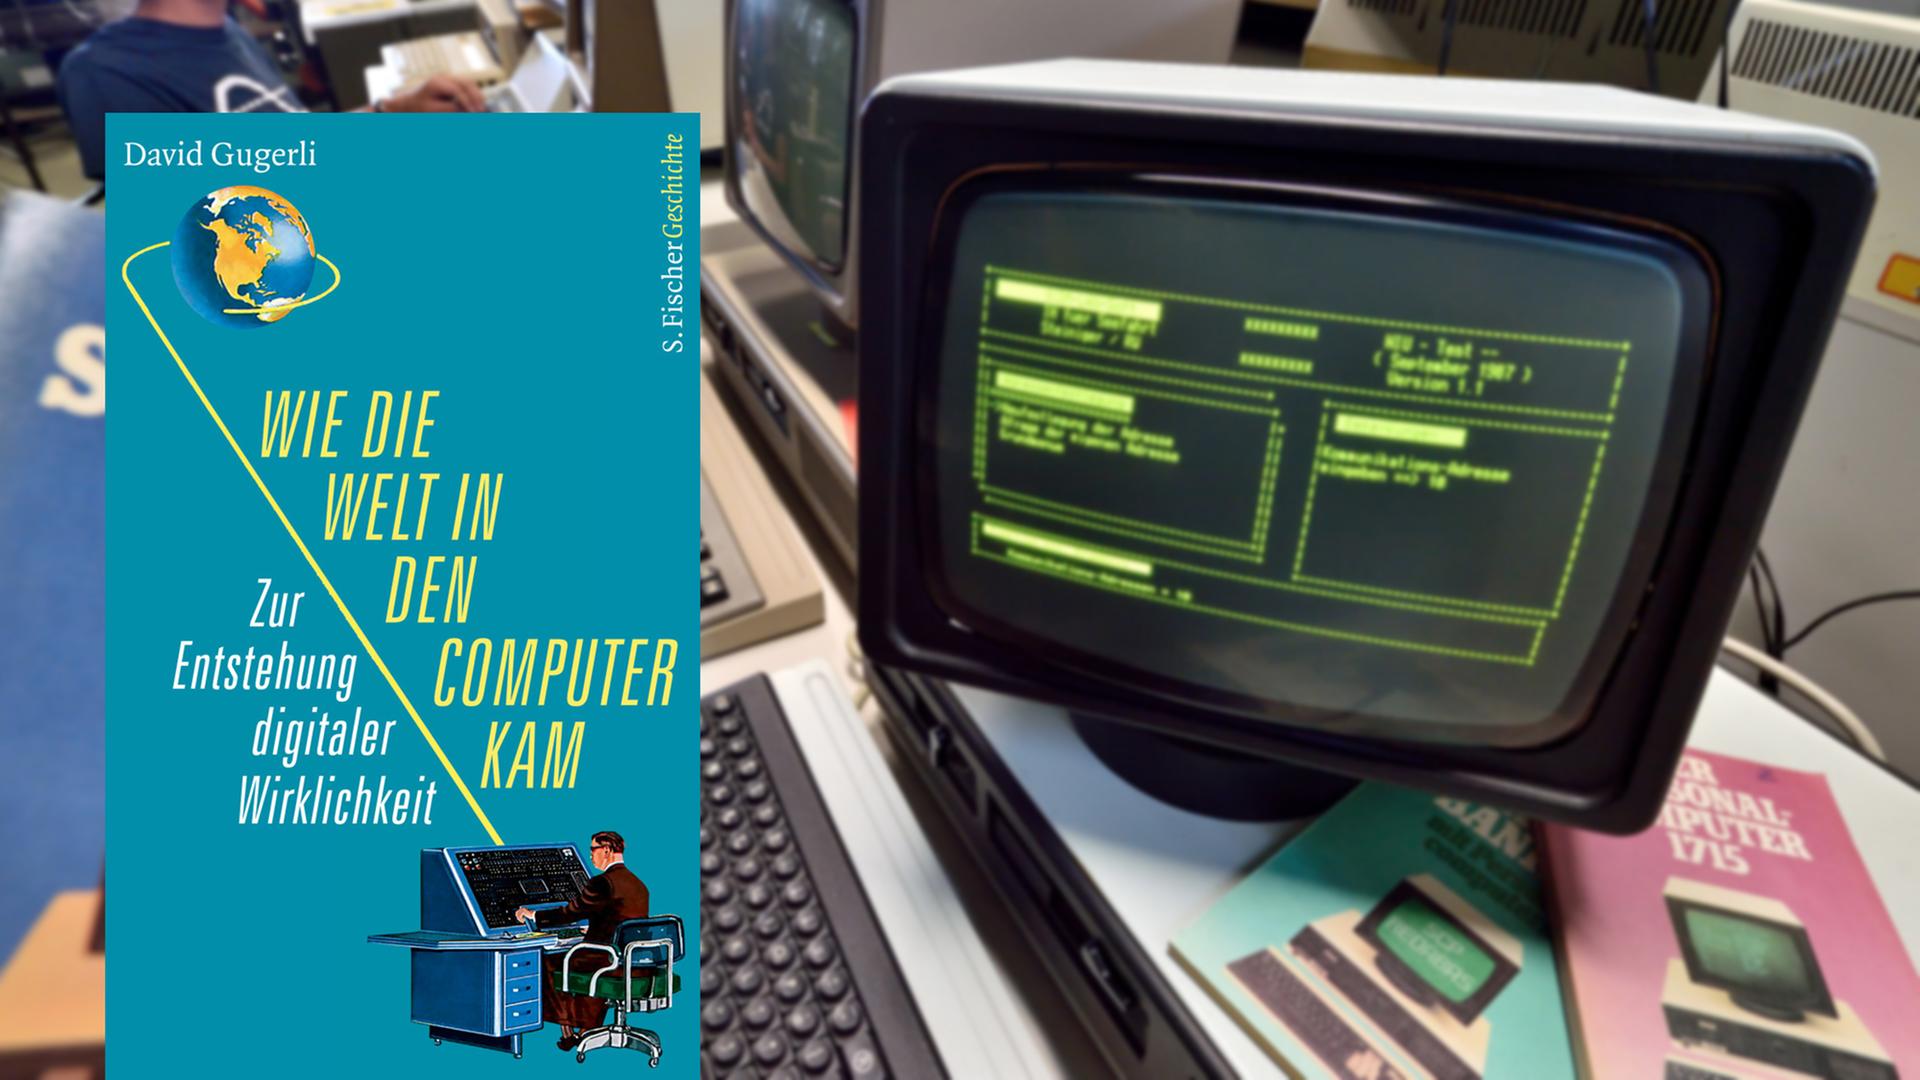 Cover von David Gugerlis "Wie die Welt in den Computer kam", im Hintergrund ist ein Bürocomputer von Robotron aus dem Büromschinenwerk Sömmerda im Computer- und Technikmuseum in Halle/Saale zu sehen